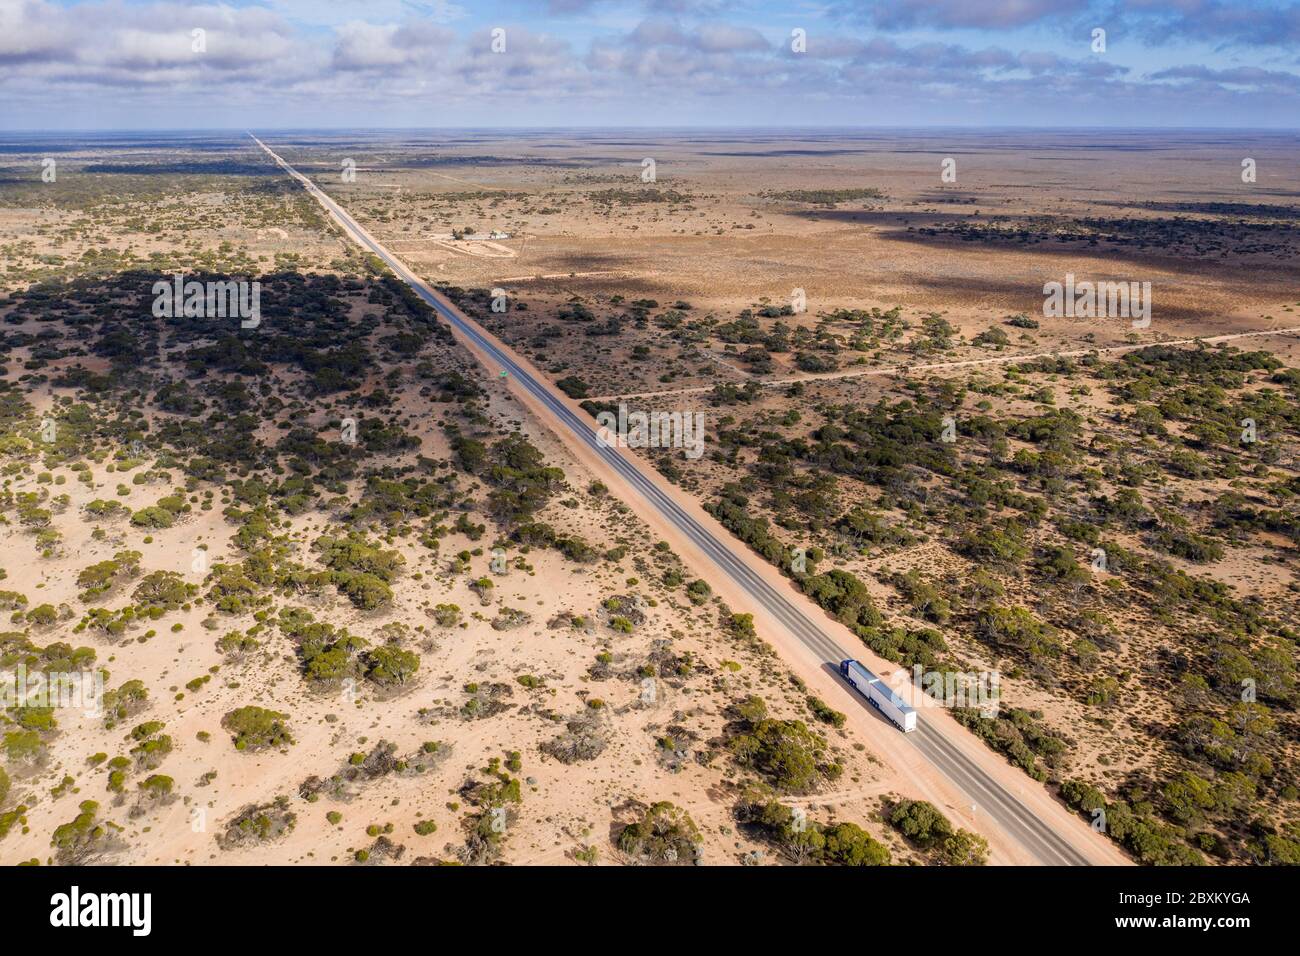 Vue aérienne du début de la route droite de 90 km, qui est la plus longue route droite d'Australie et est située sur la plaine de Nullarbor Banque D'Images